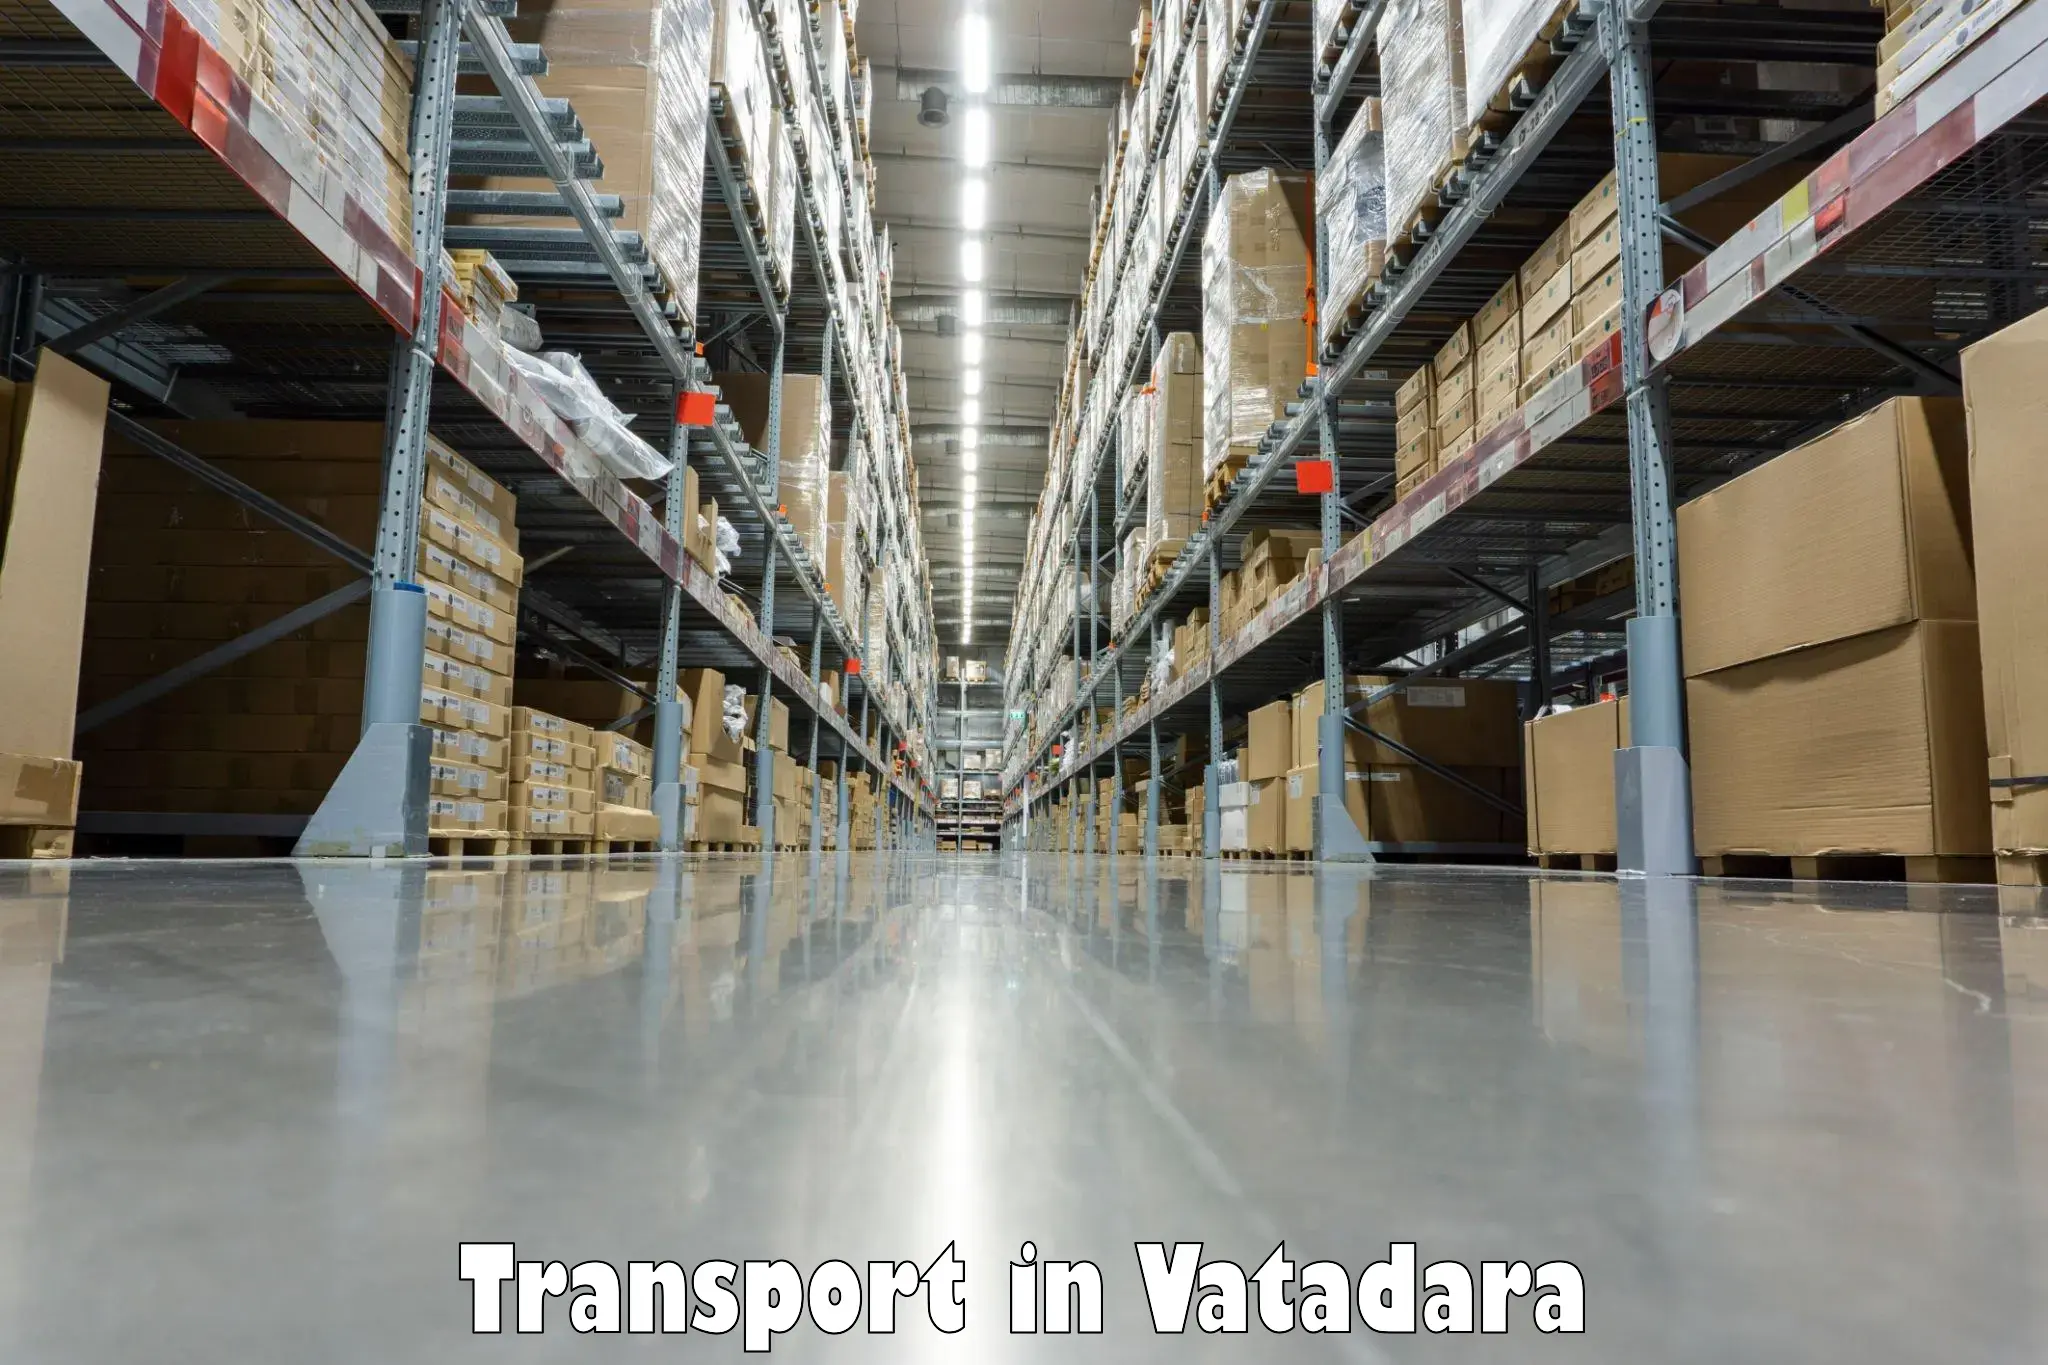 Transportation services in Vatadara